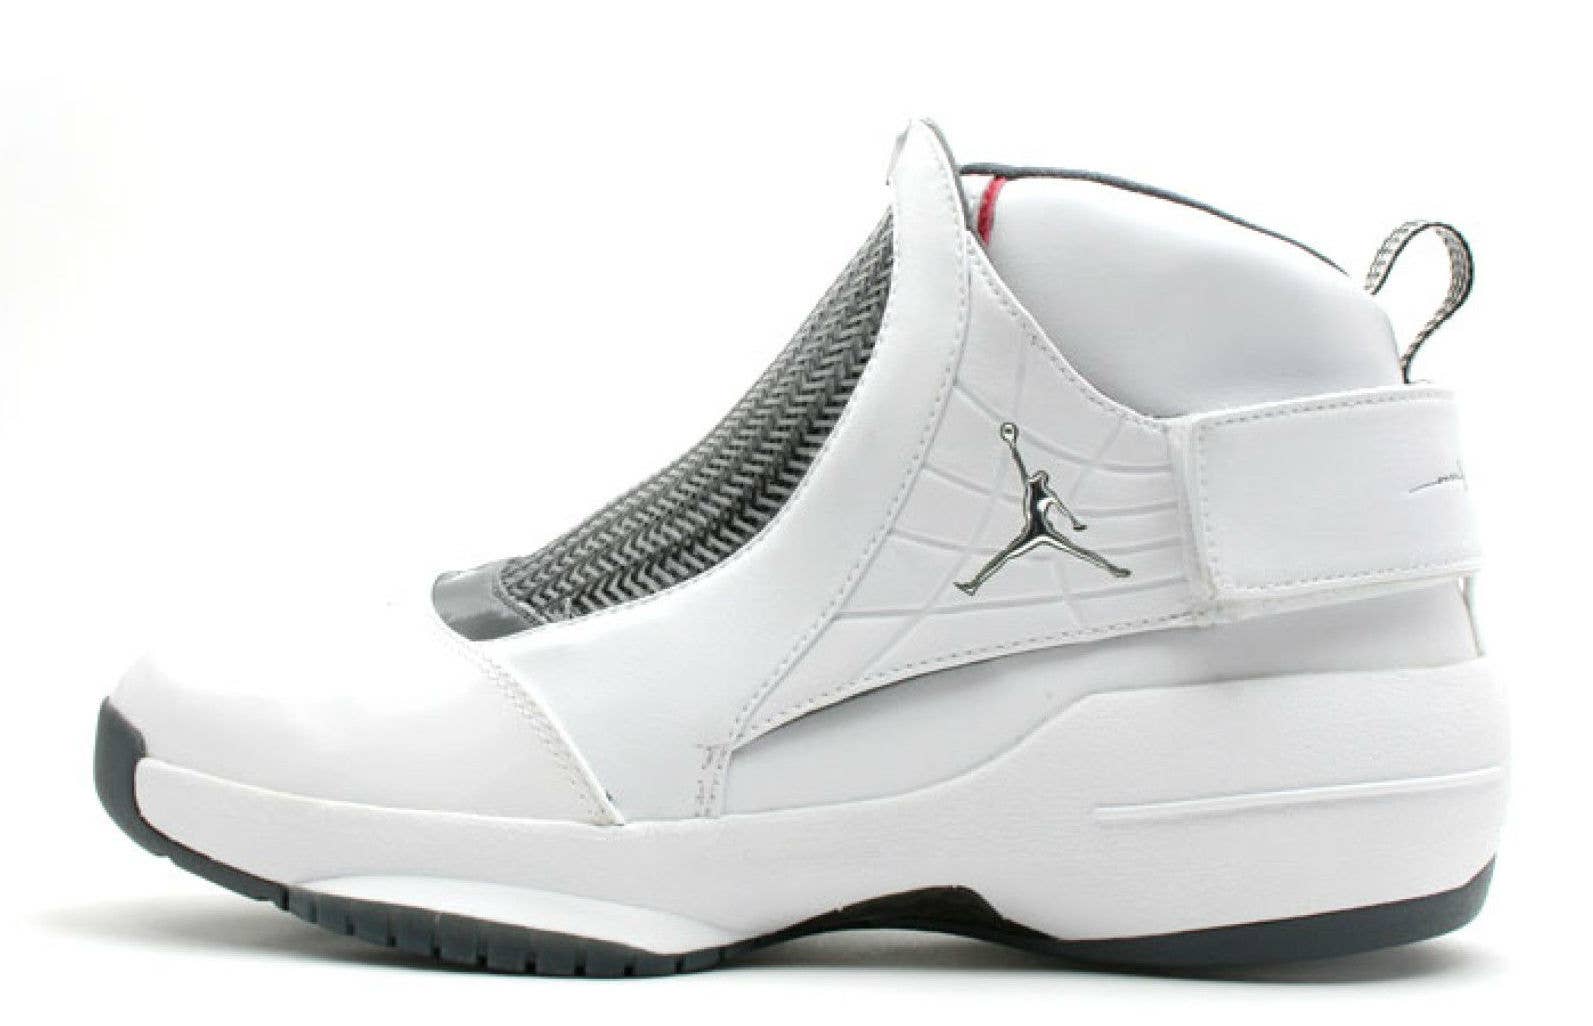 Air Jordan 19 White Chrome Flint